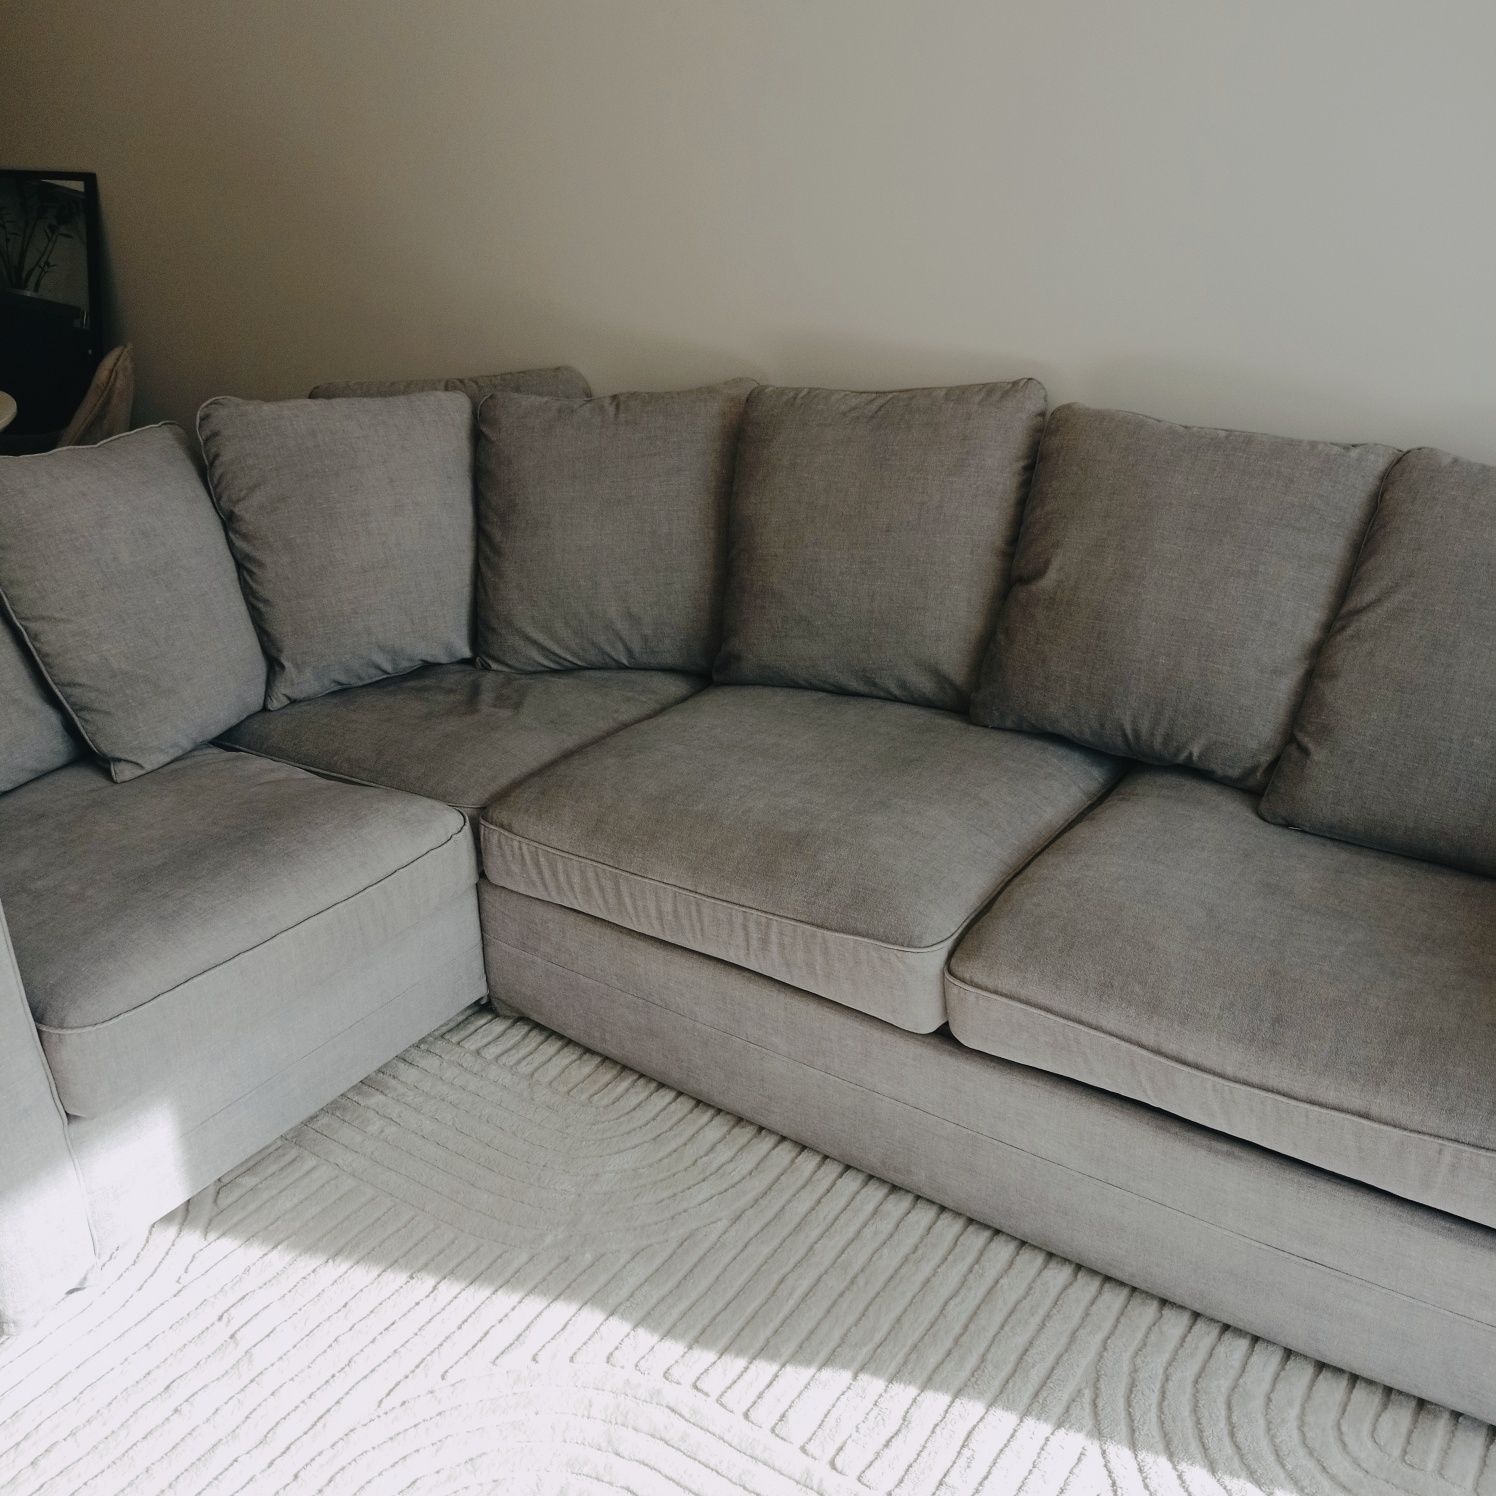 Pokrycie kanapy IKEA GRONLID Softi Light Grey szare siwe narożnej